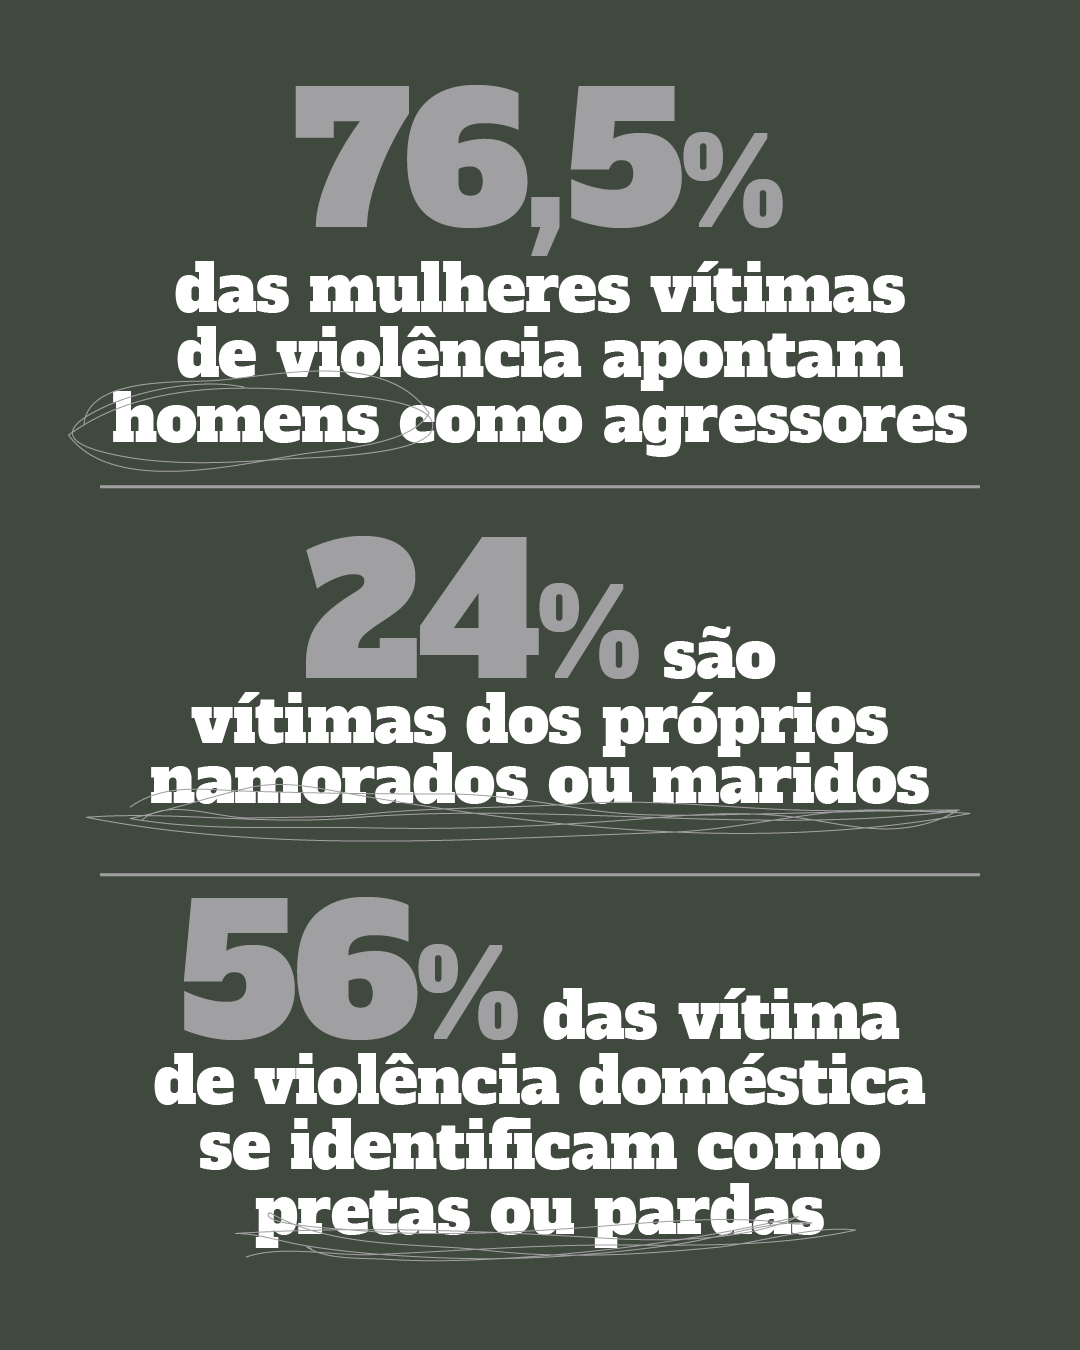 76,5% das mulheres vítimas de violência apontam homens como agressores. 24% são vítimas dos próprios namorados ou maridos56% das vítima de violência doméstica se identificam como pretas ou pardas